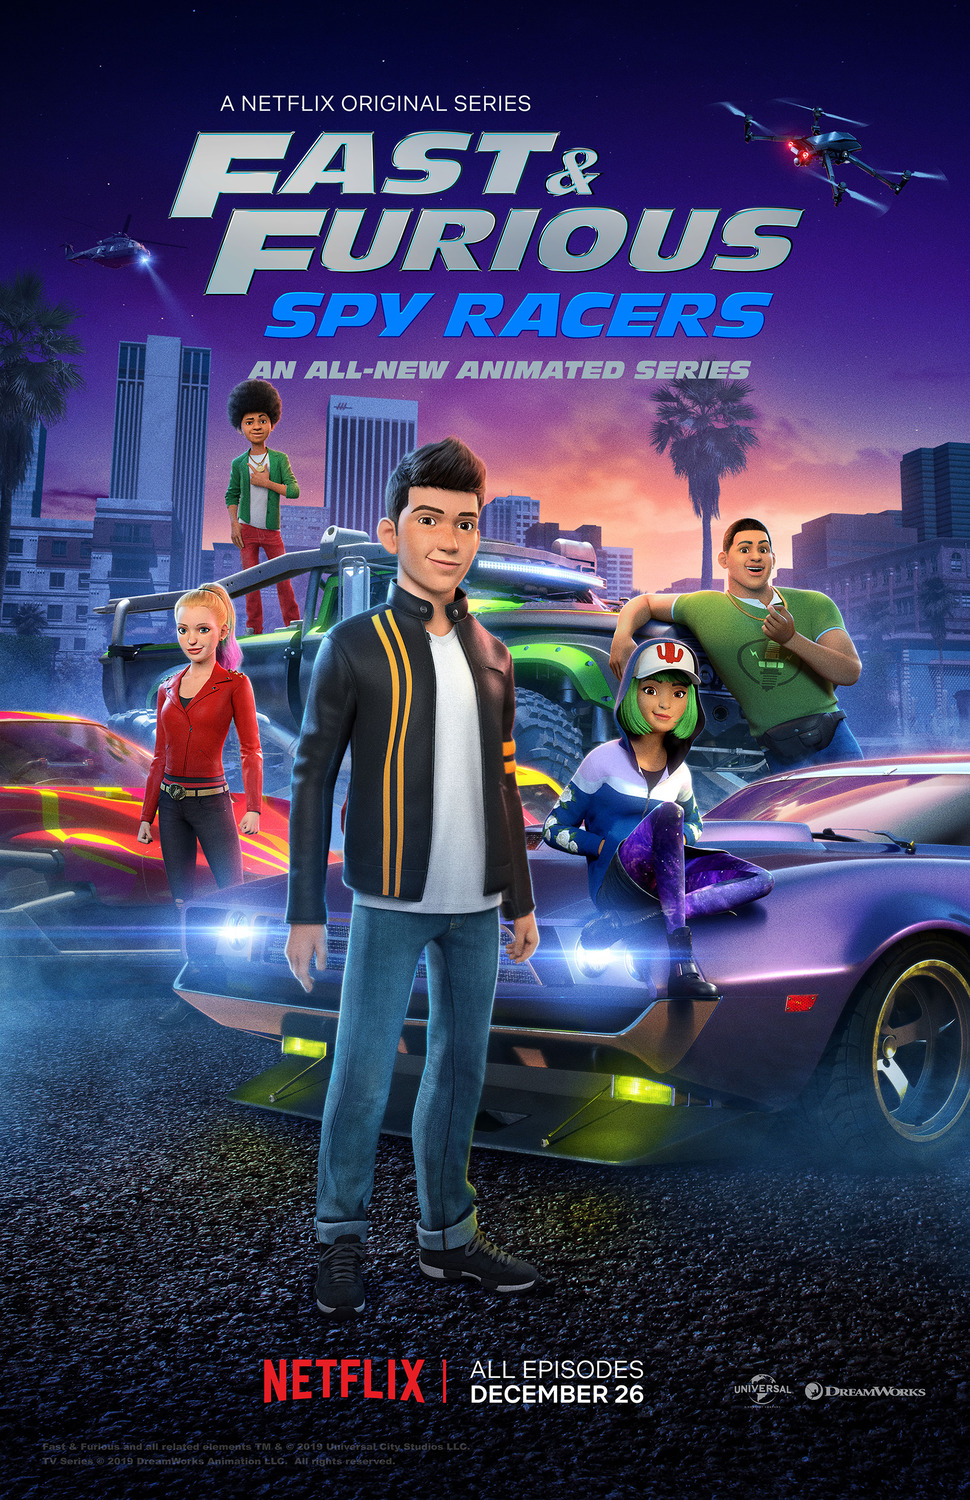 ดูหนังออนไลน์ฟรี Fast & Furious Spy Racers (2019) Season1 EP5 เร็ว…แรง ทะลุนรก ซิ่งสยบโลก ตอนที่ 5 (พากย์ไทย)